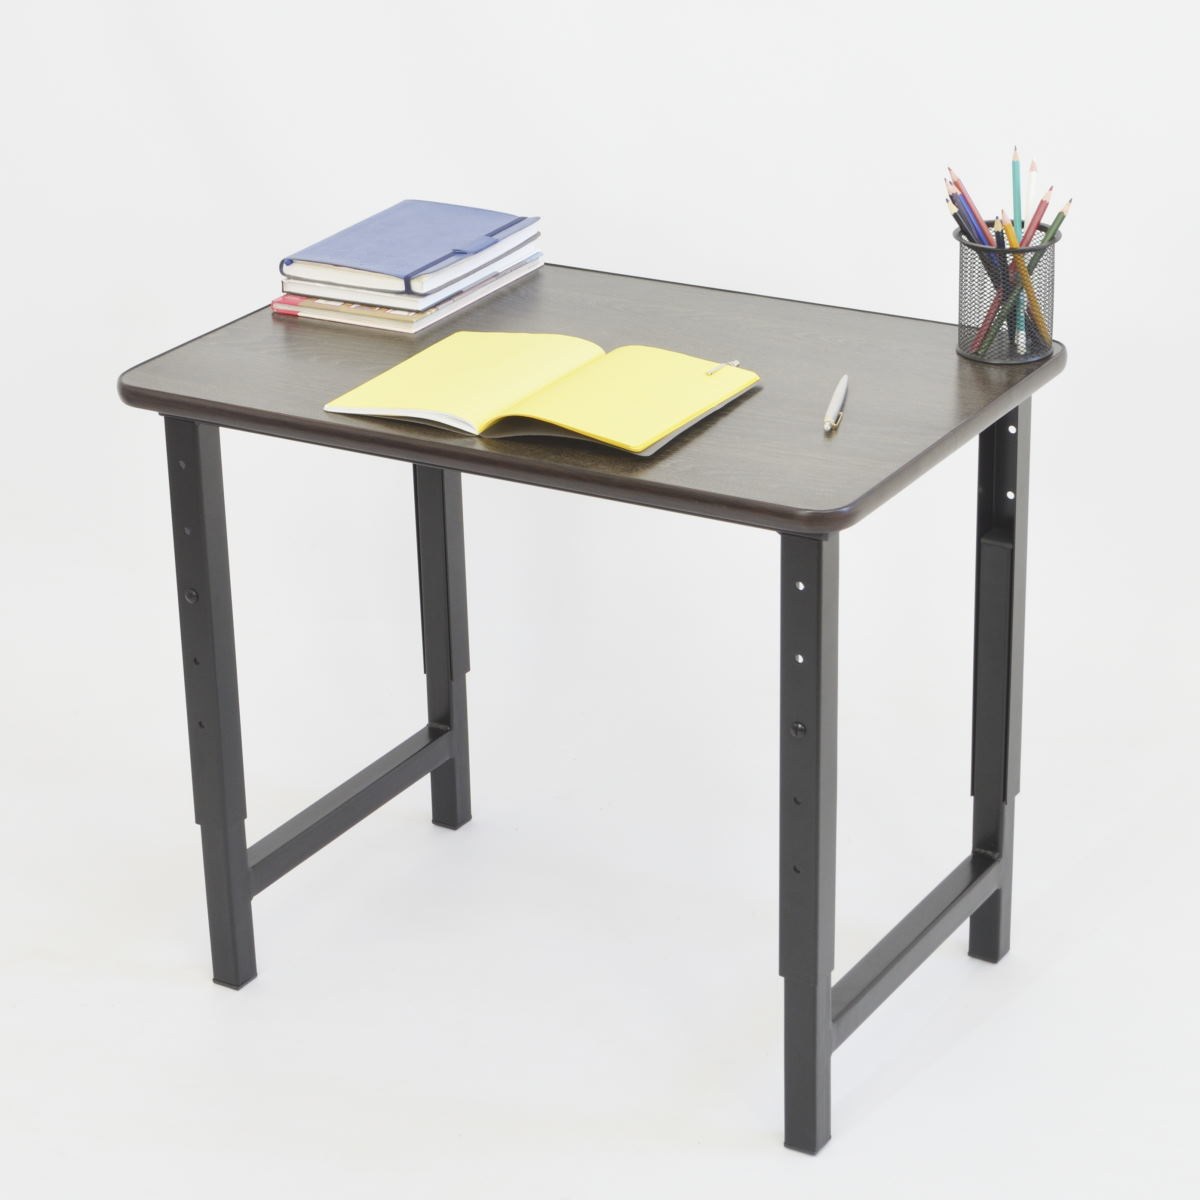 Высота стола для школьника стандарт письменного относительно ребенка